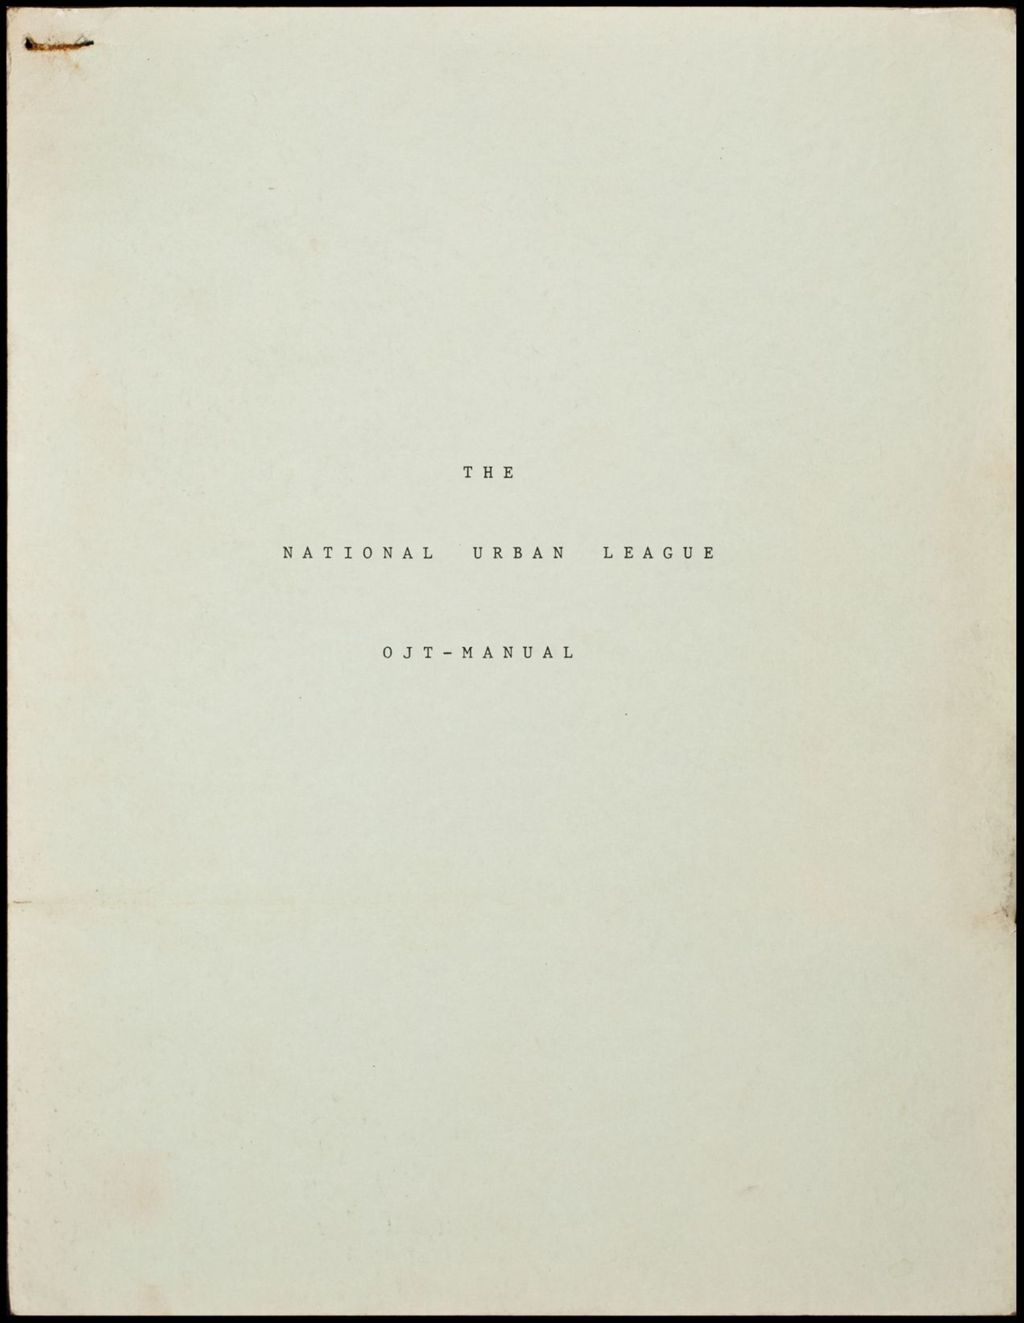 Miniature of NUL Manual, 1965 (Folder II-27)